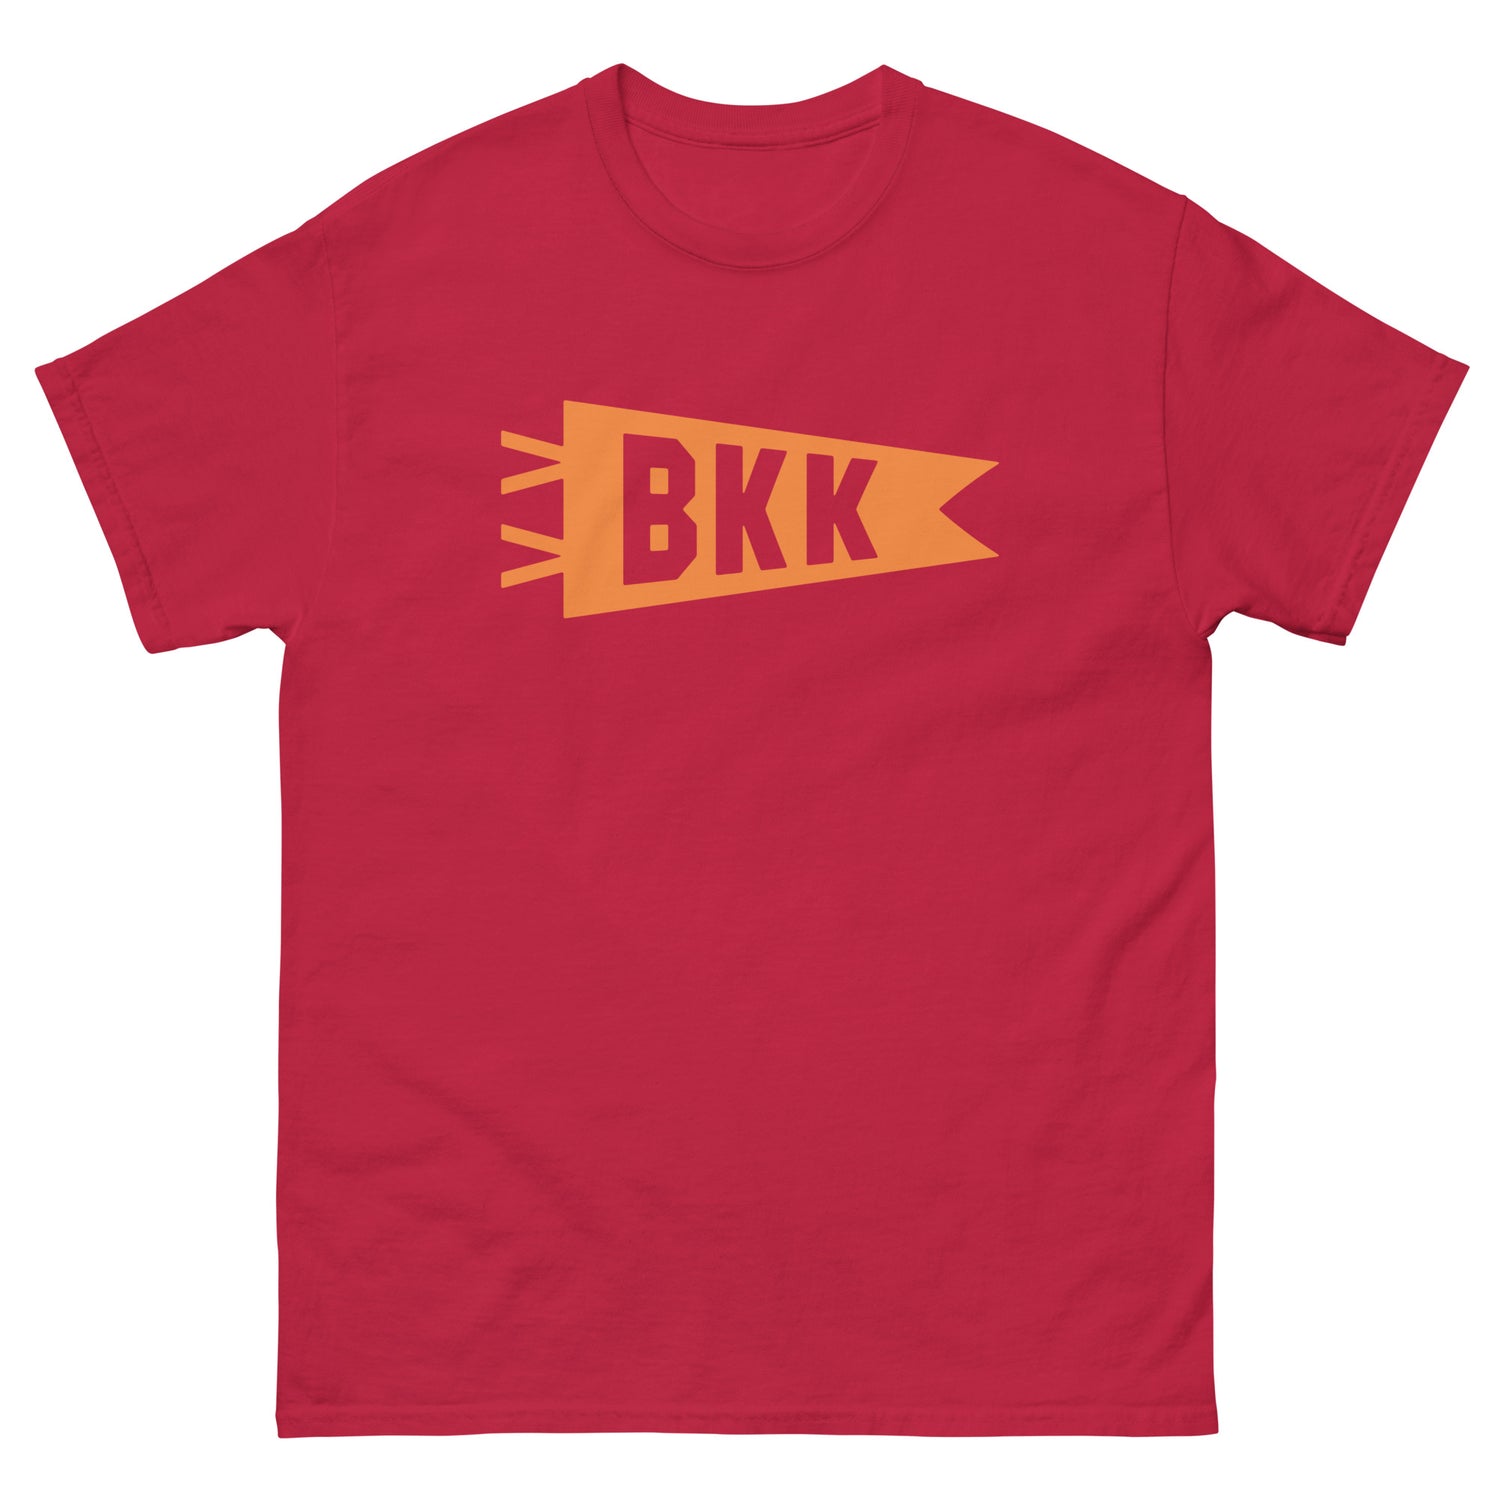 Bangkok Thailand Adult T-Shirts • BKK Airport Code